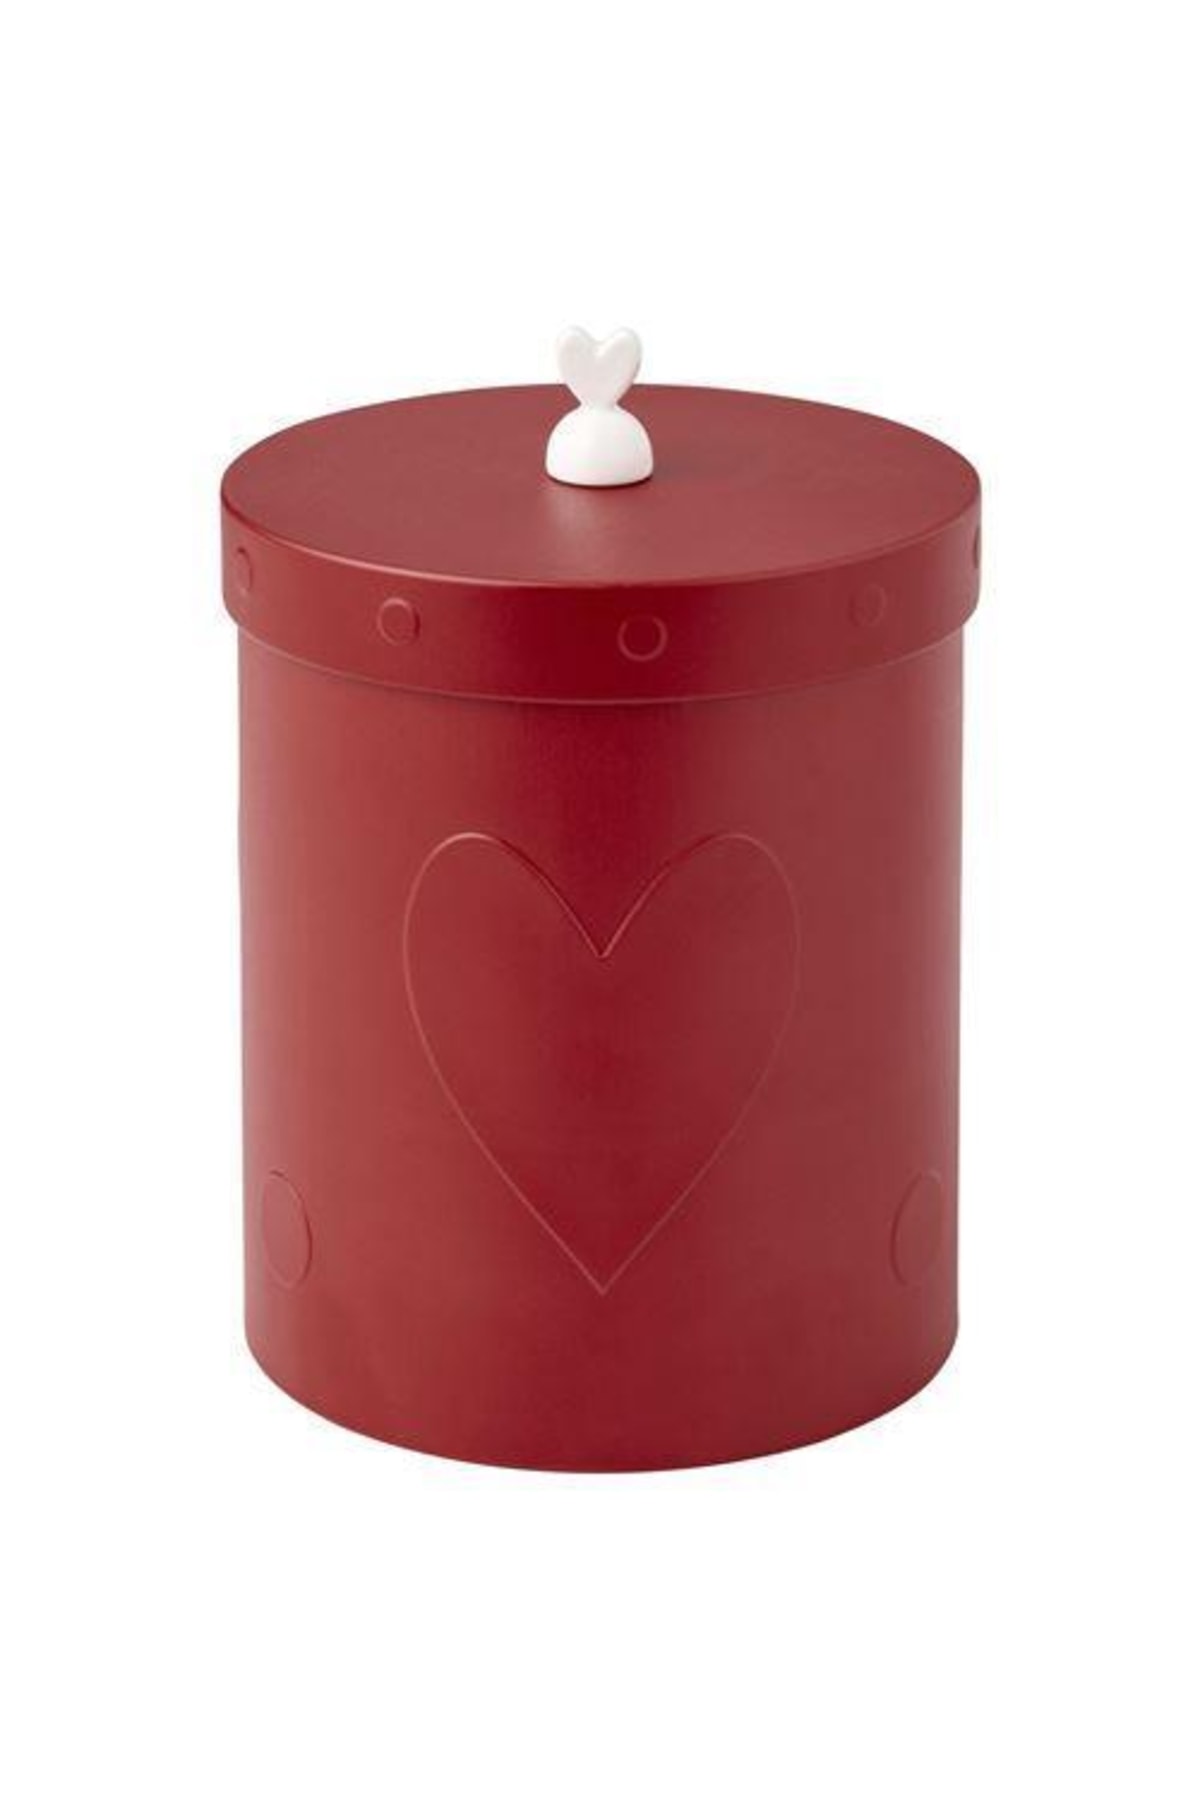 IKEA Kalpli Model Kapaklı Kahve-çay Kutusu Meridyendukkan Kırmızı 12 Cm